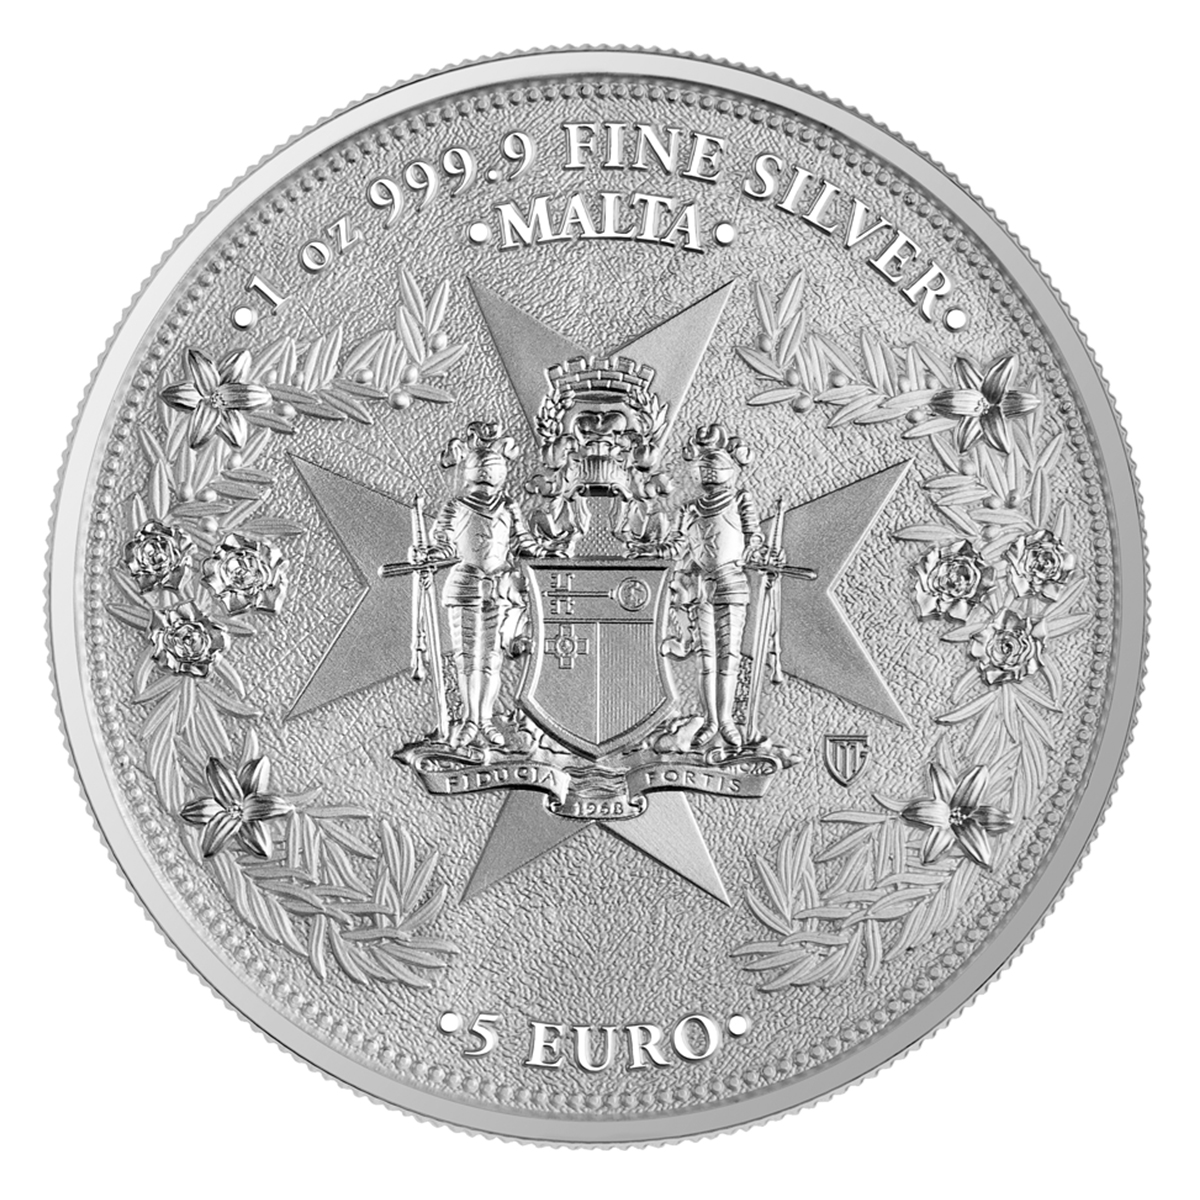 1 oz Silver Coin - Golden Eagle